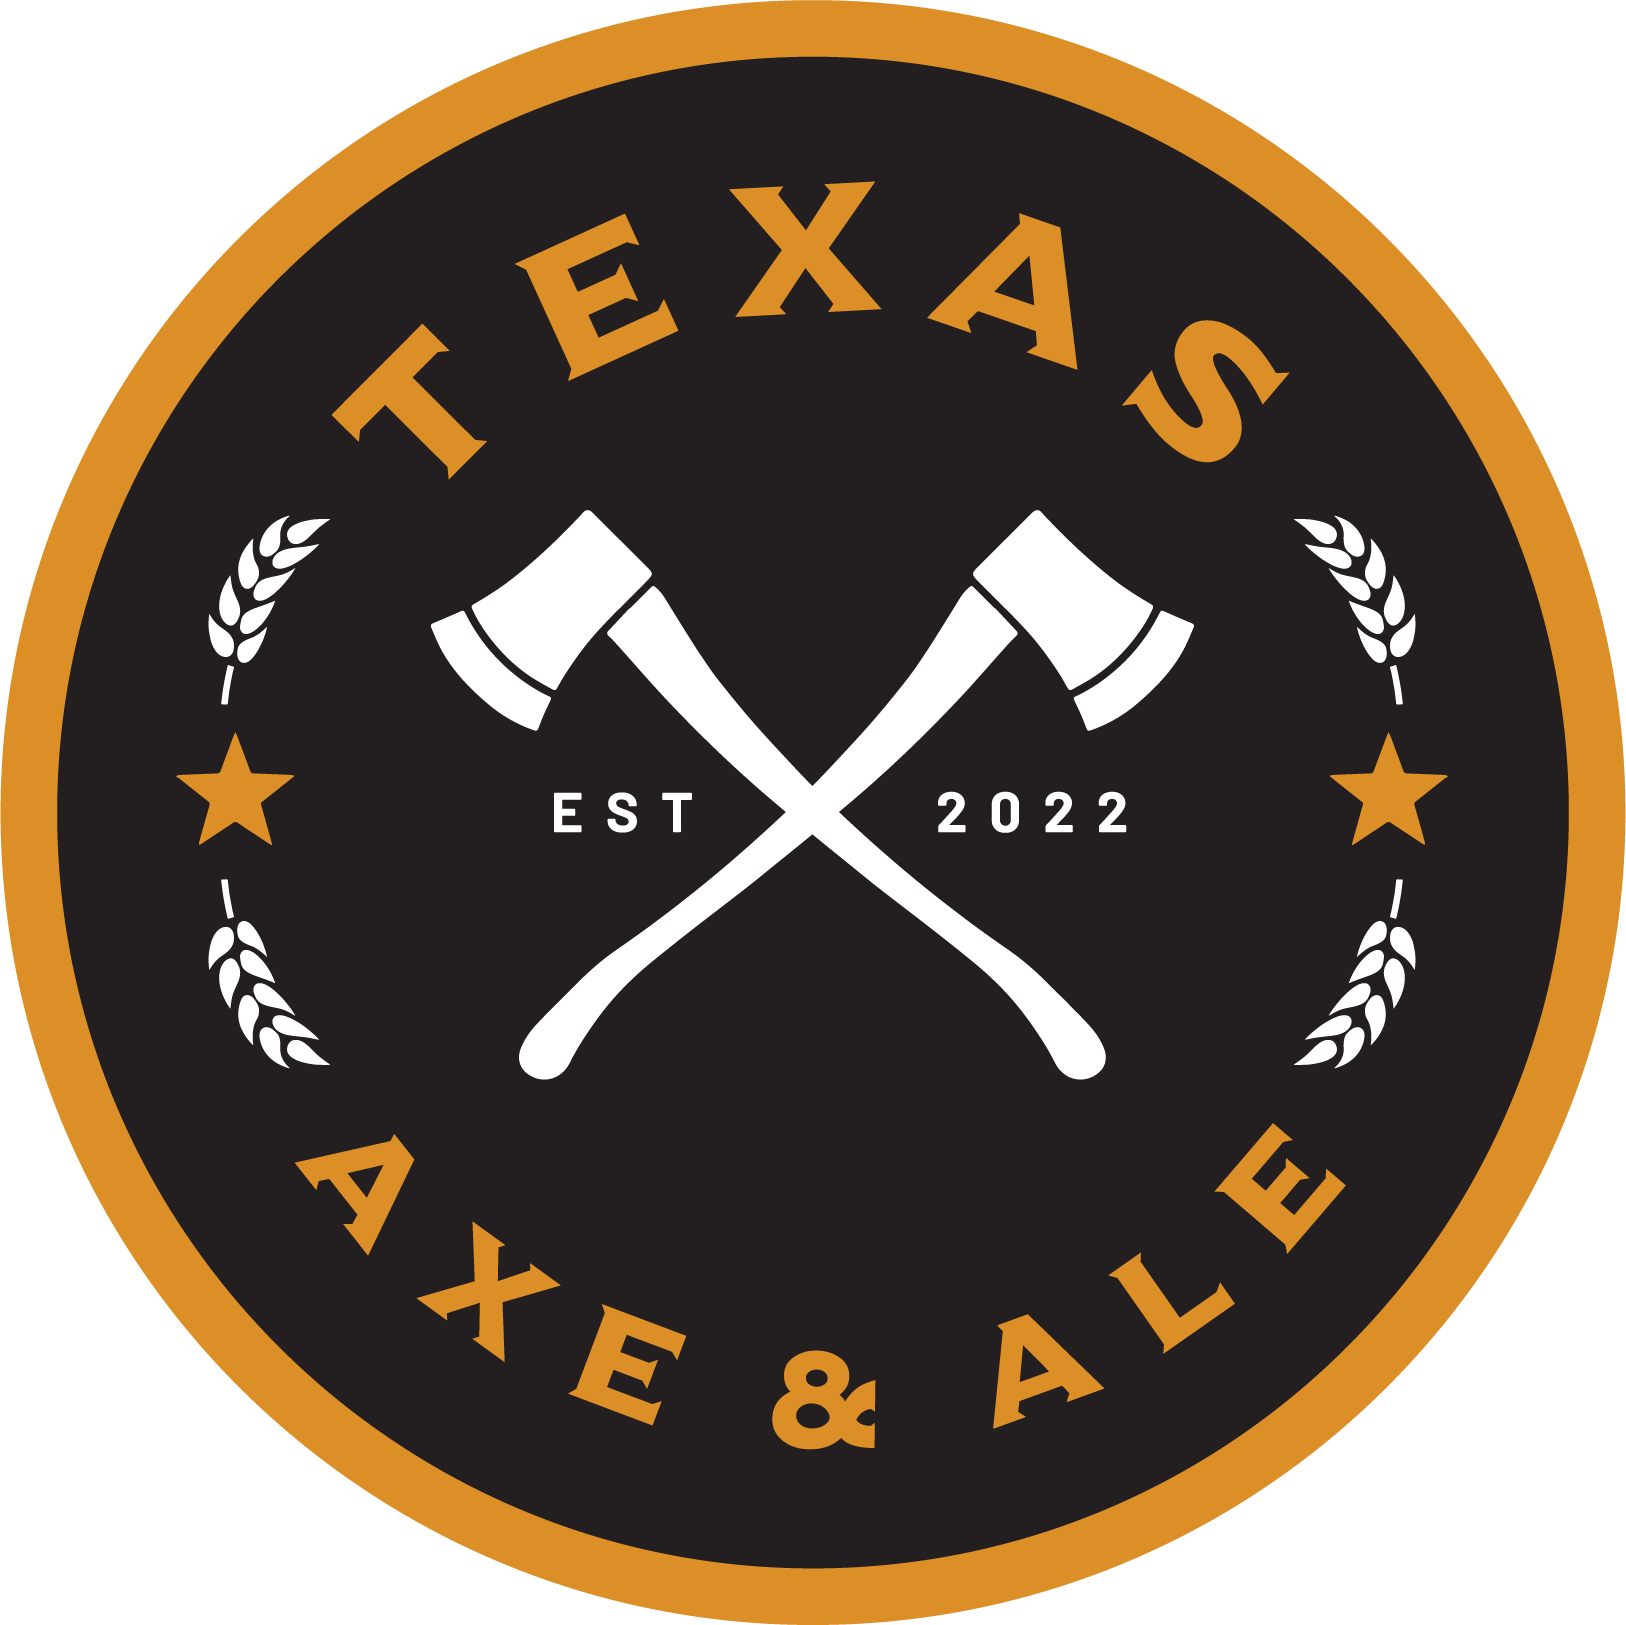 Texas Axe & Ale